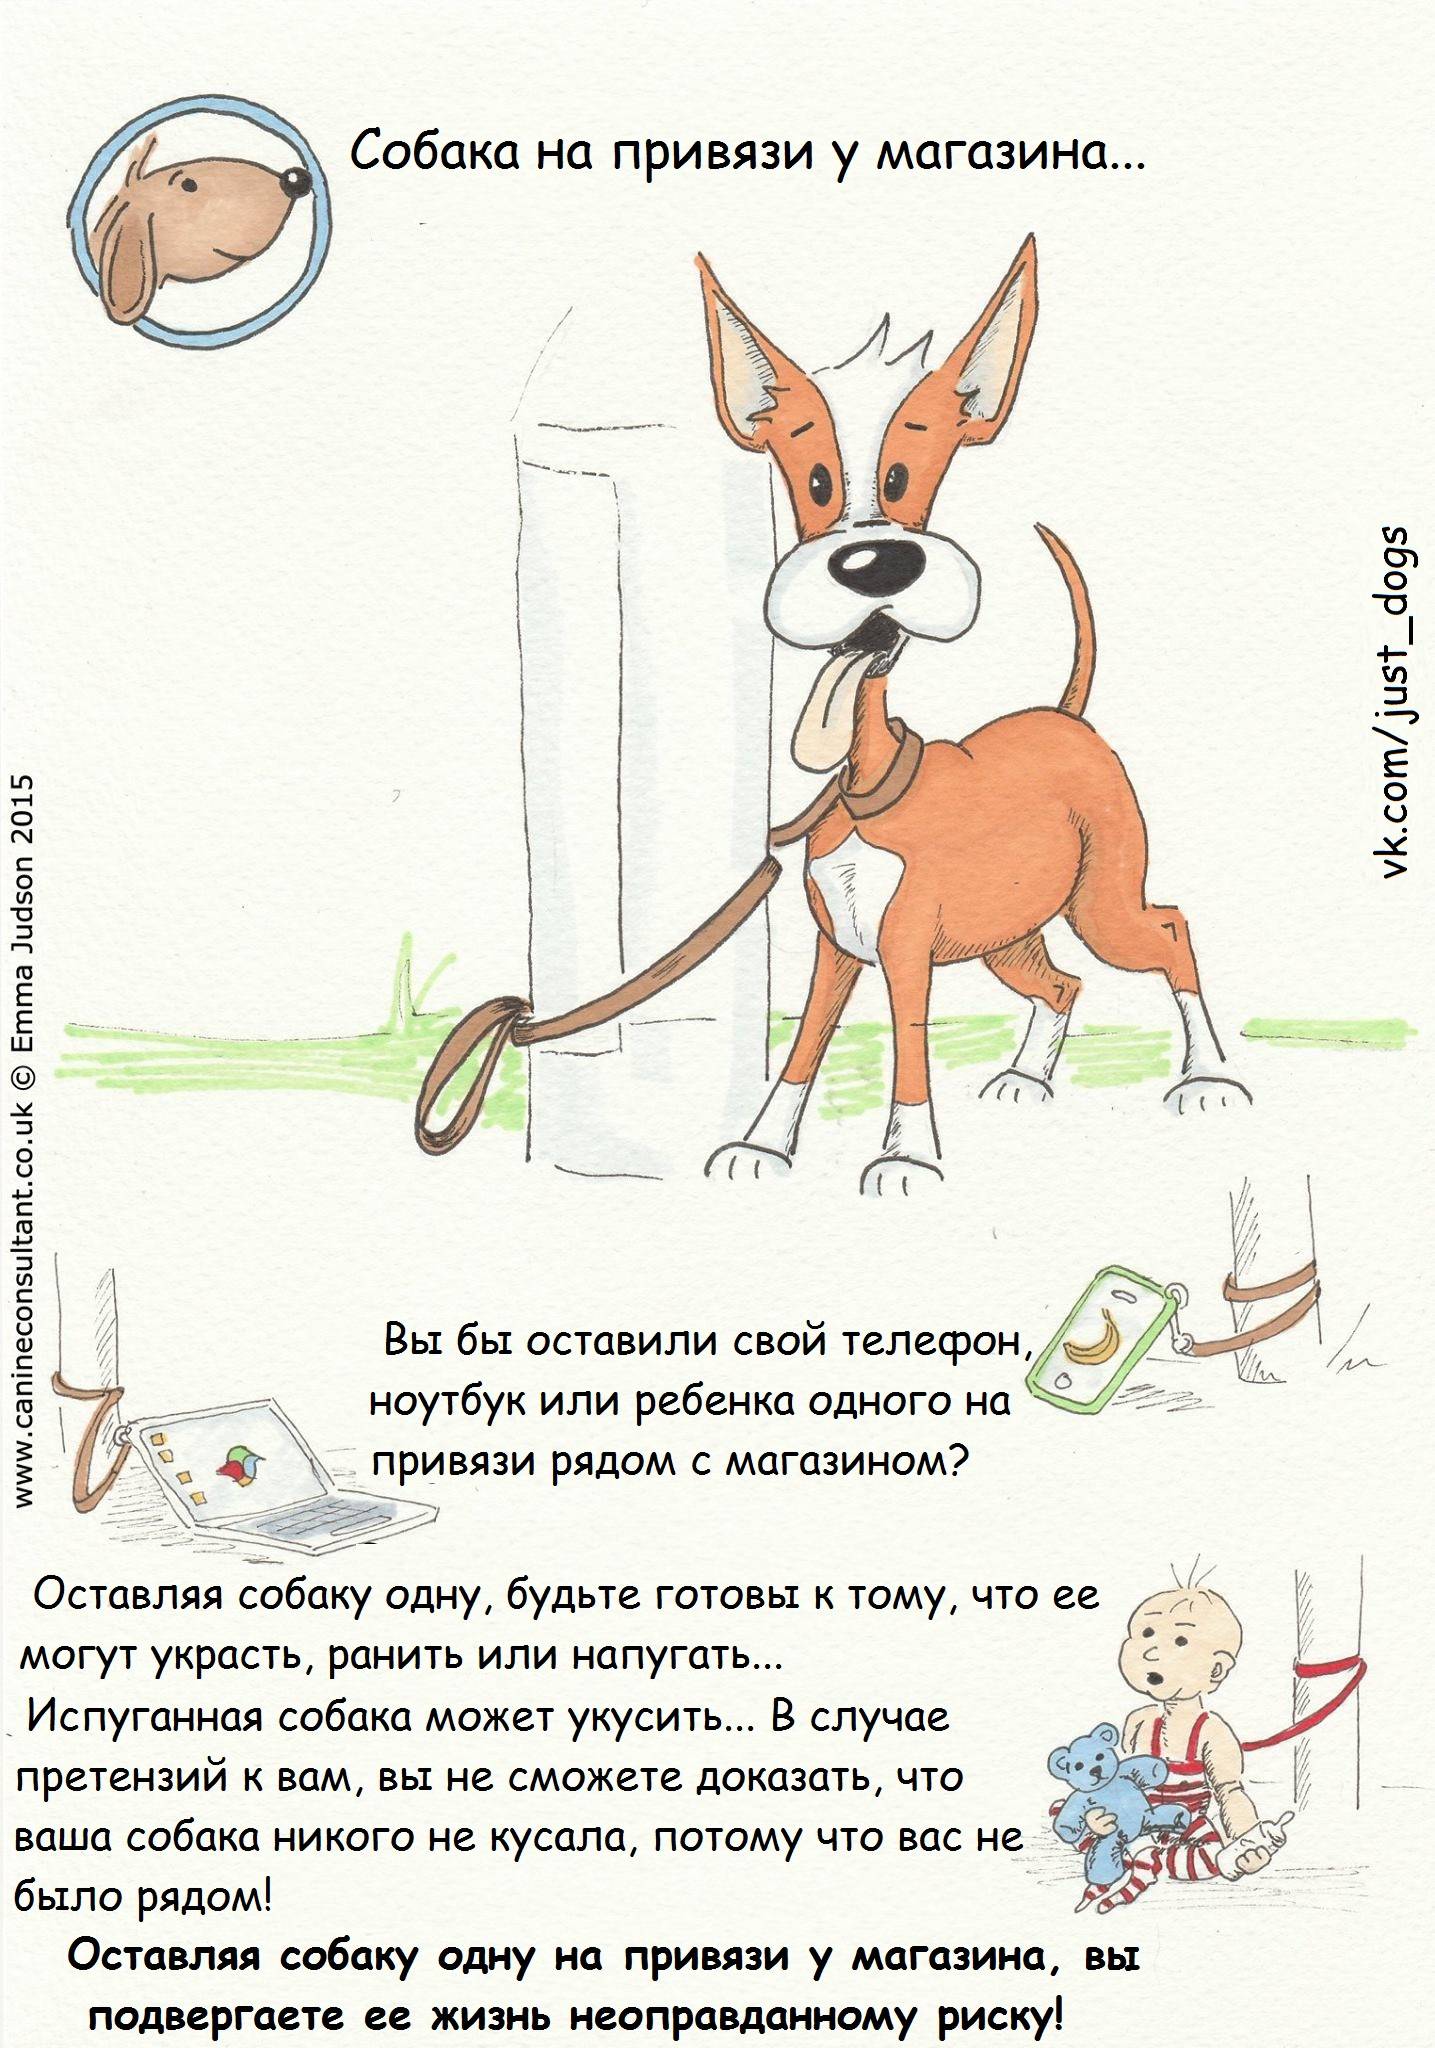 Как воспитать послушную собаку: место собаки в доме, методы дрессировки и воспитания собаки